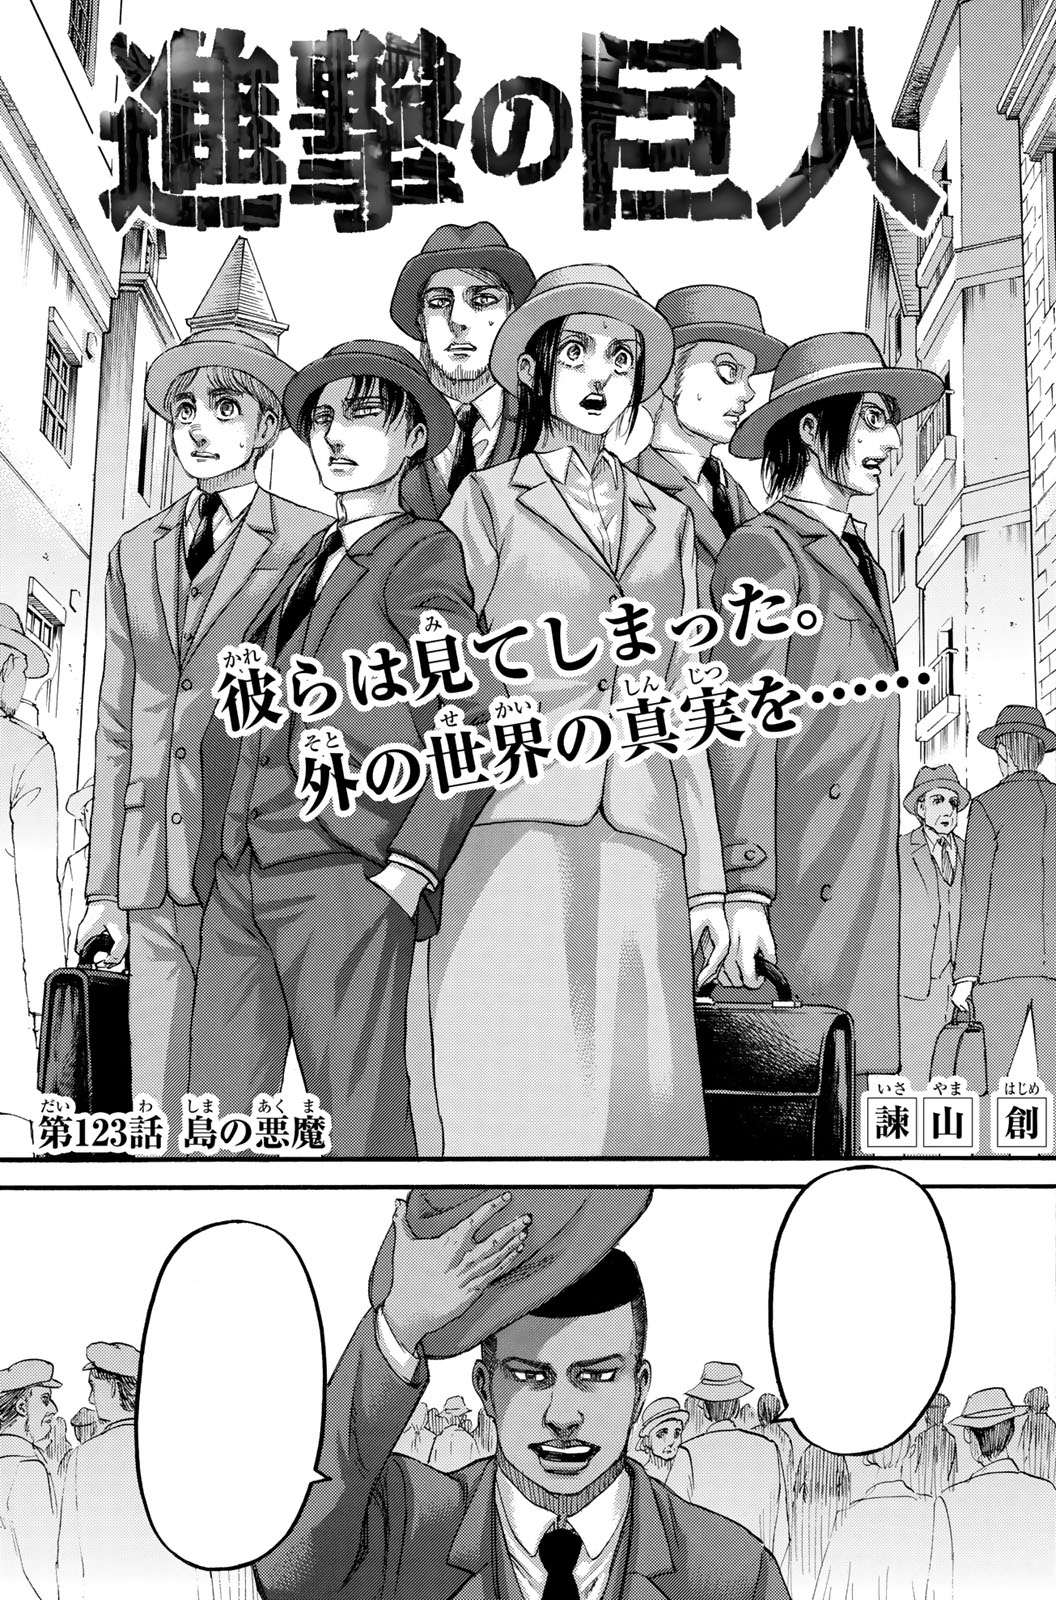 Shingeki no Kyojin: temporada 2 nos spoileó el manga